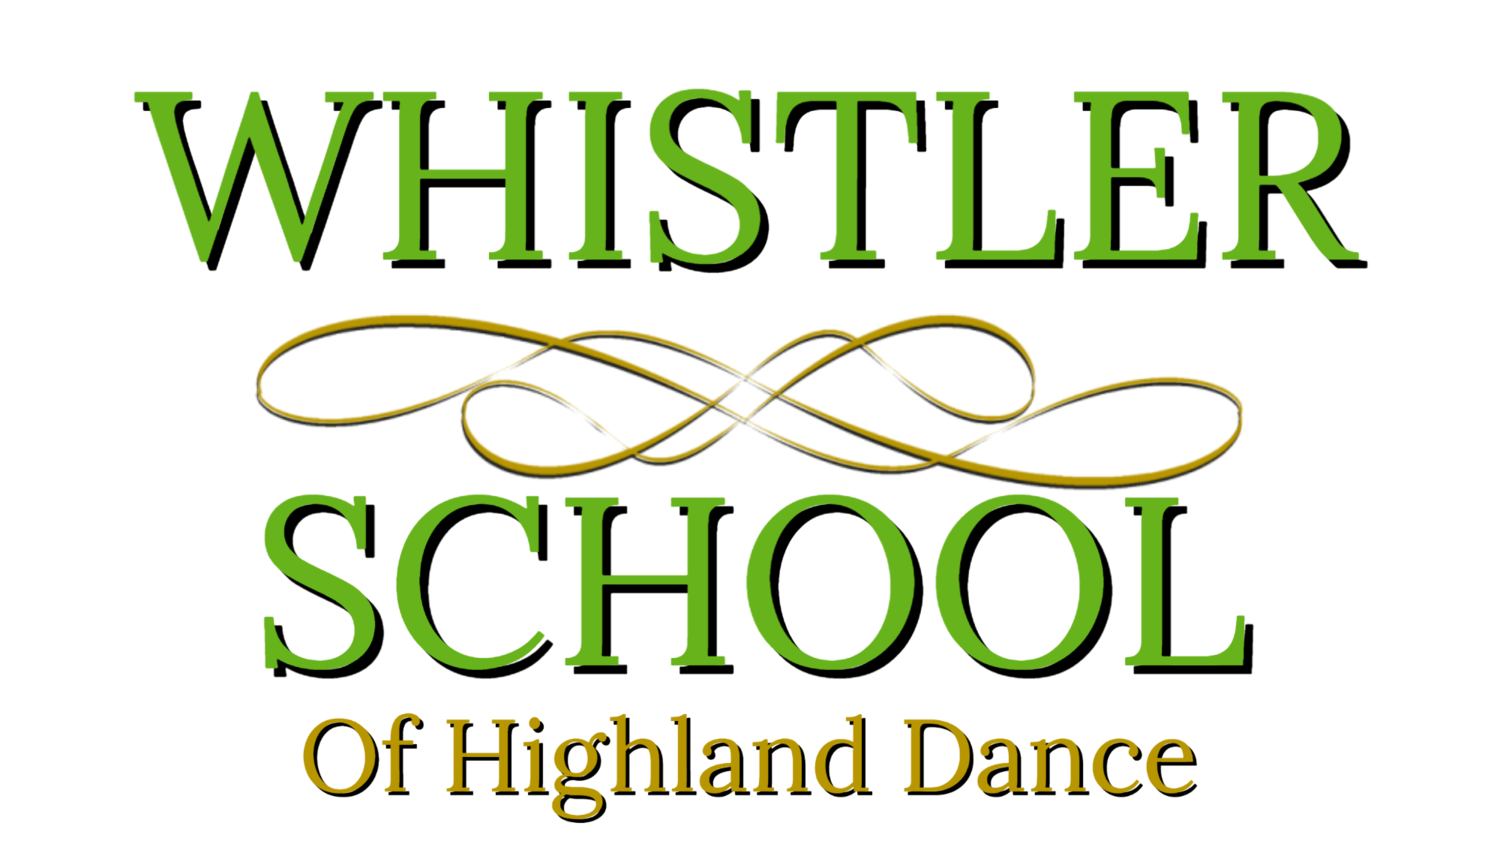 WHISTLER SCHOOL OF HIGHLAND DANCE